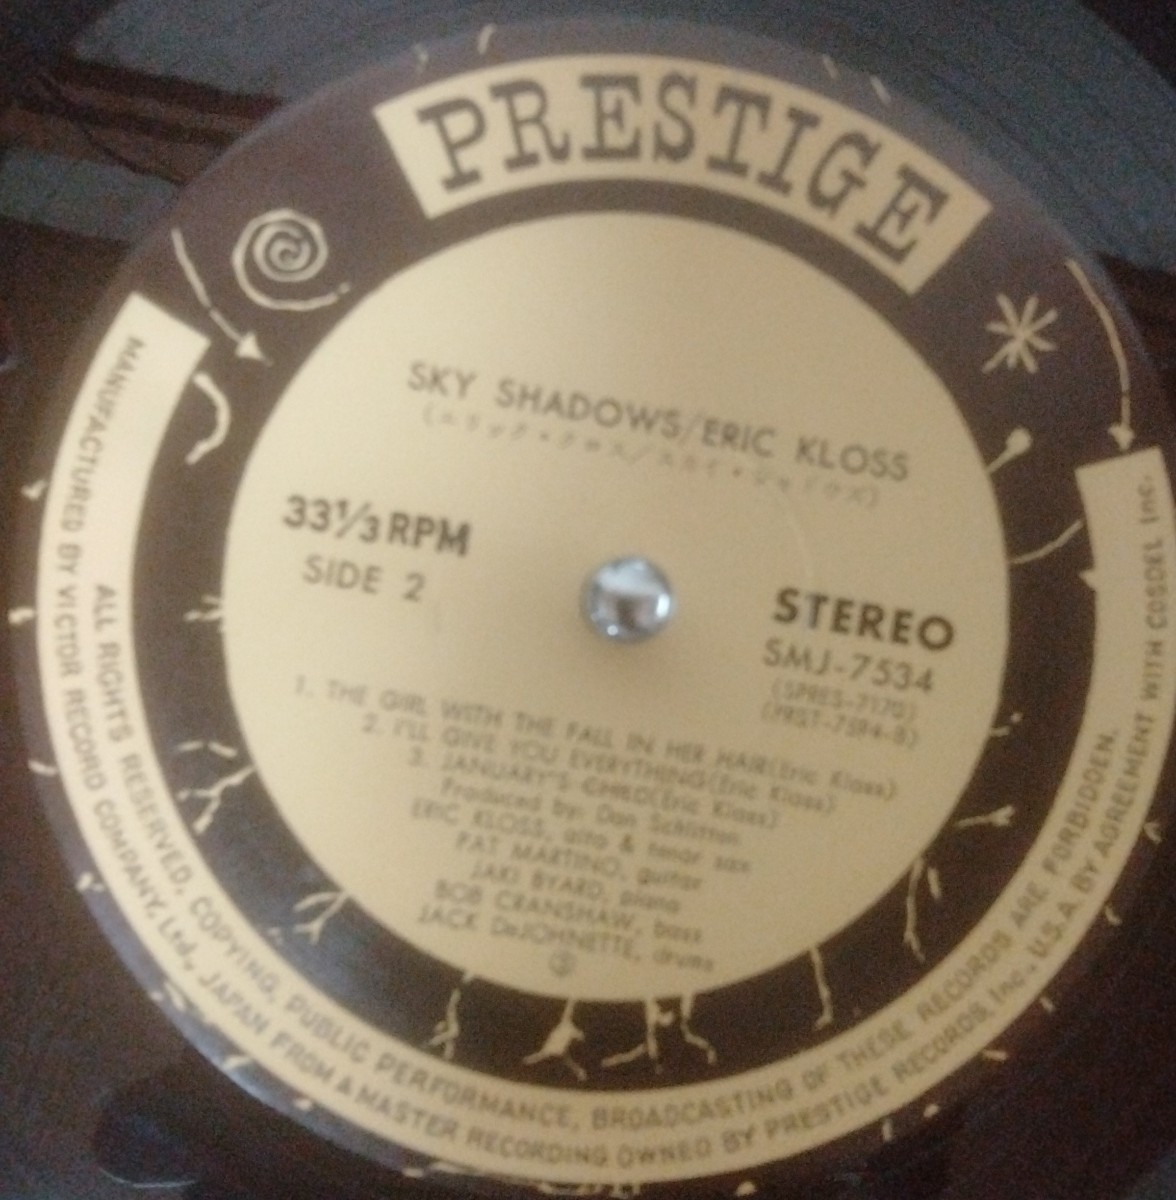 Sky Shadows スカイ・シャドウズ / Eric Kloss エリック・クロス LP レコード　美盤_画像3